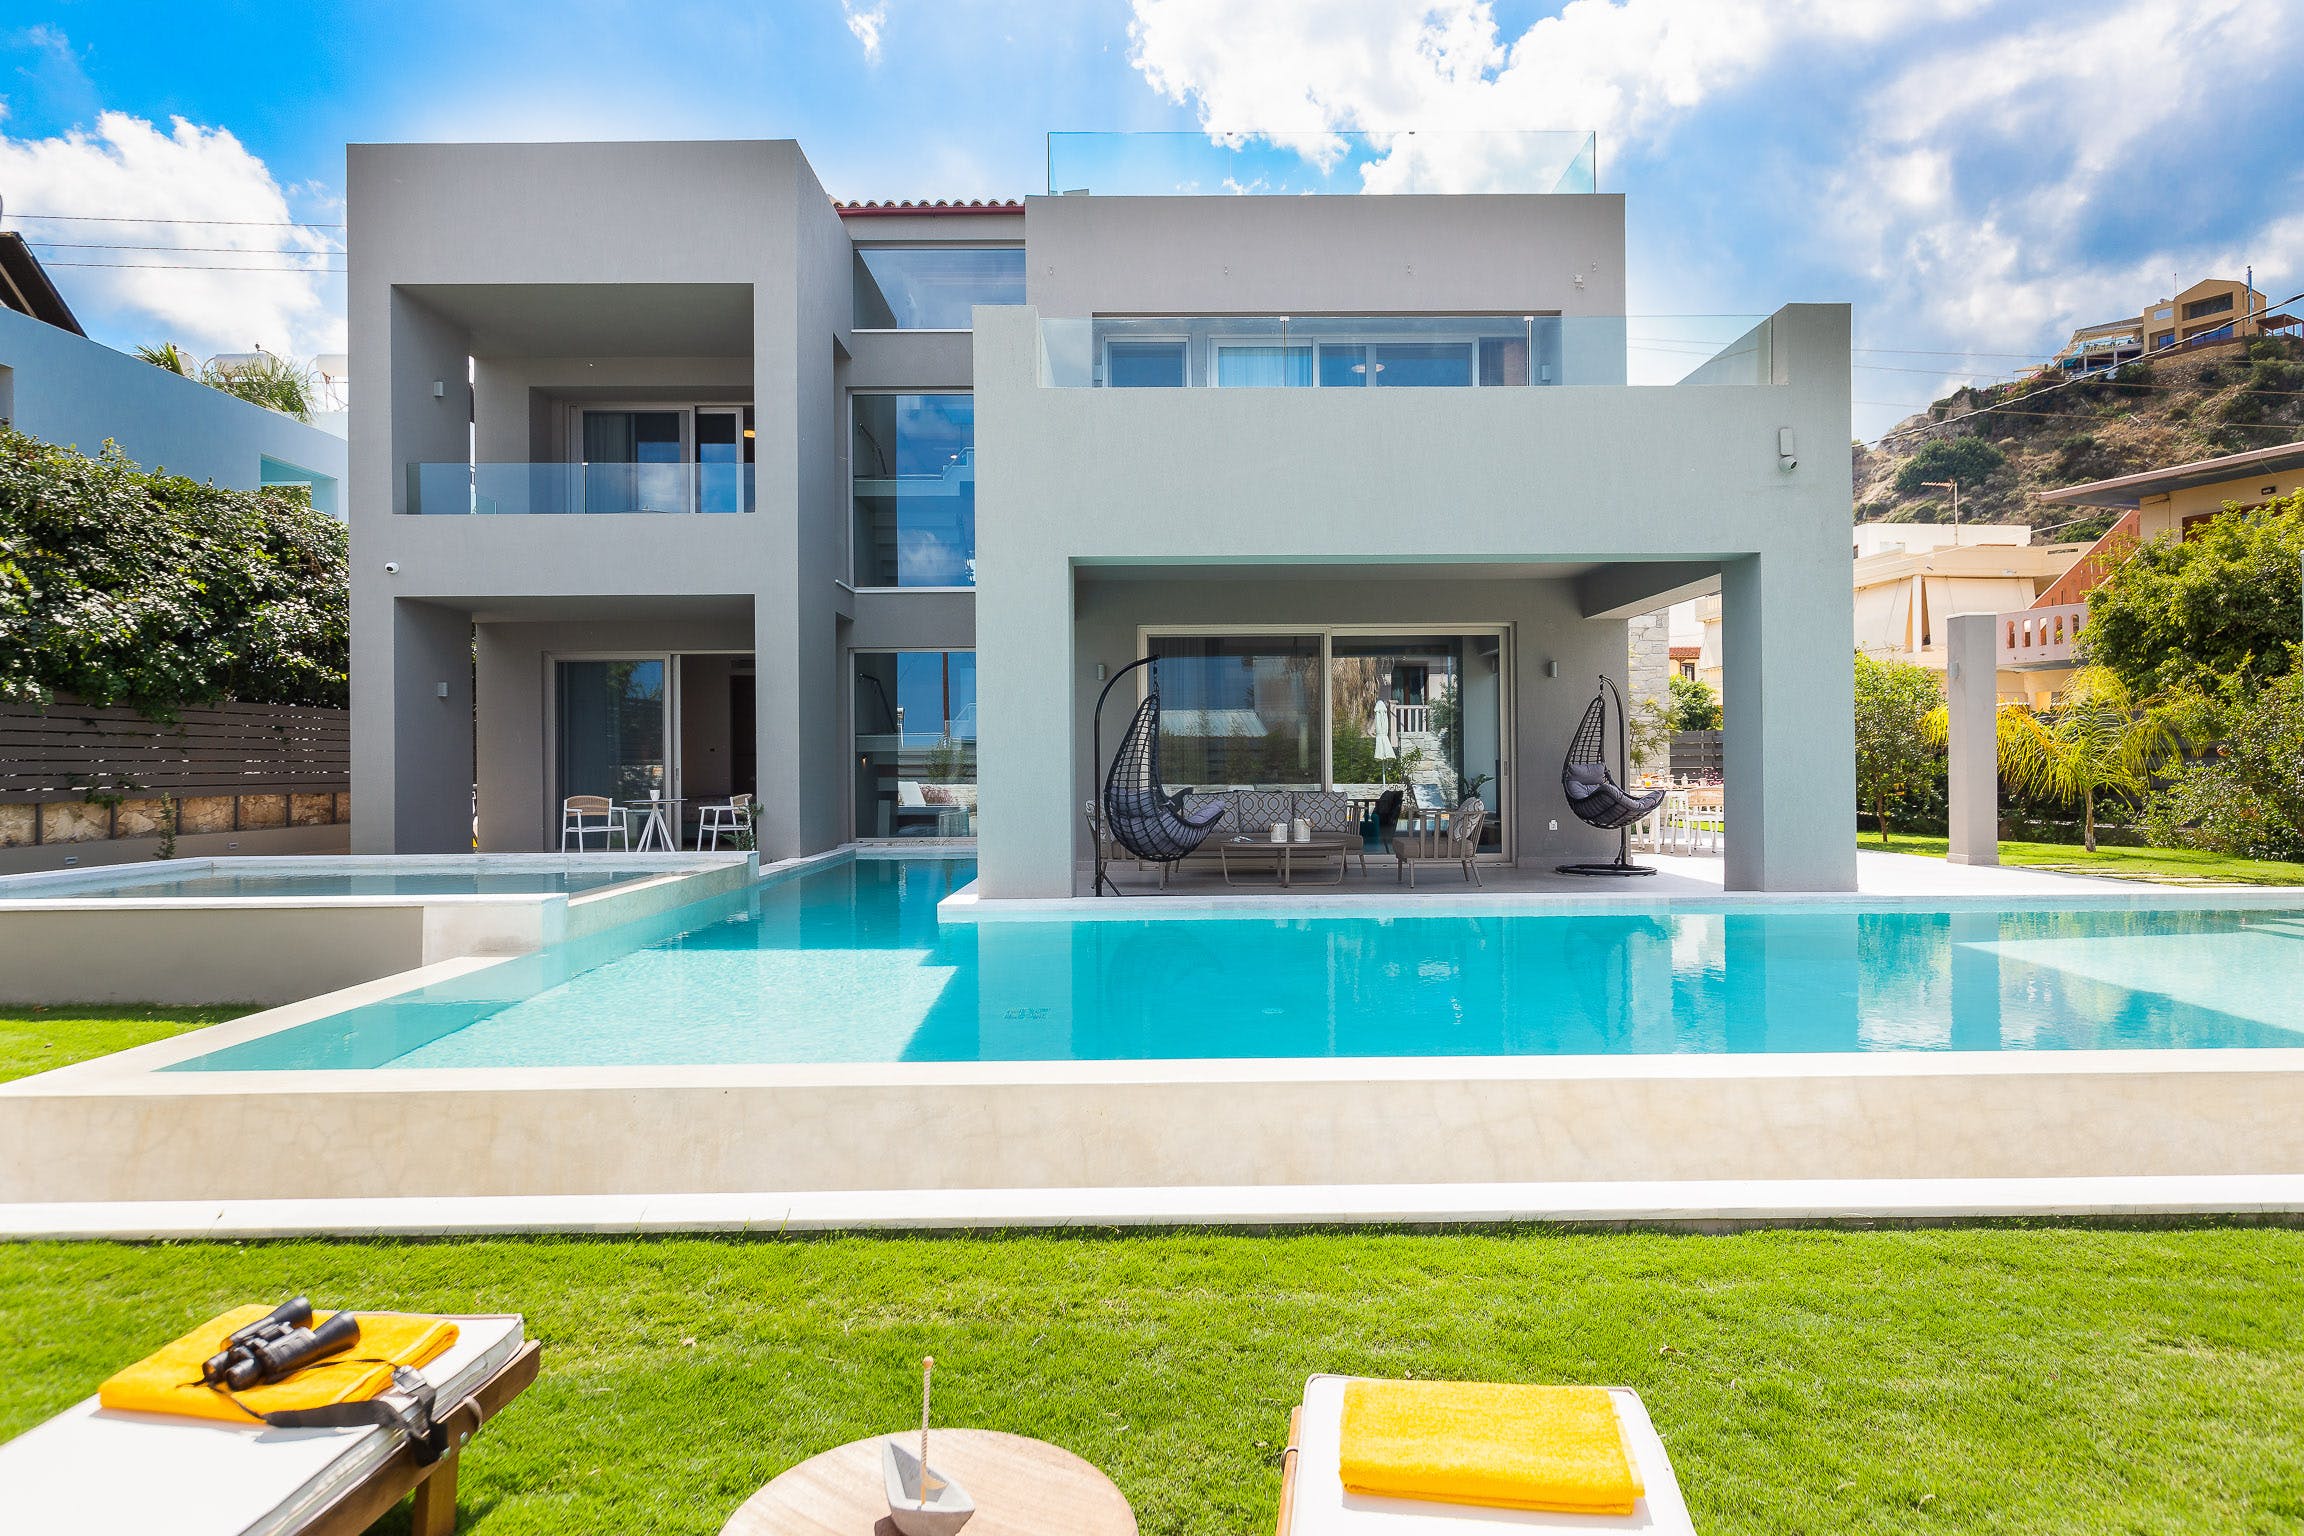 Terra Creta - Greece villa in Crete with pool